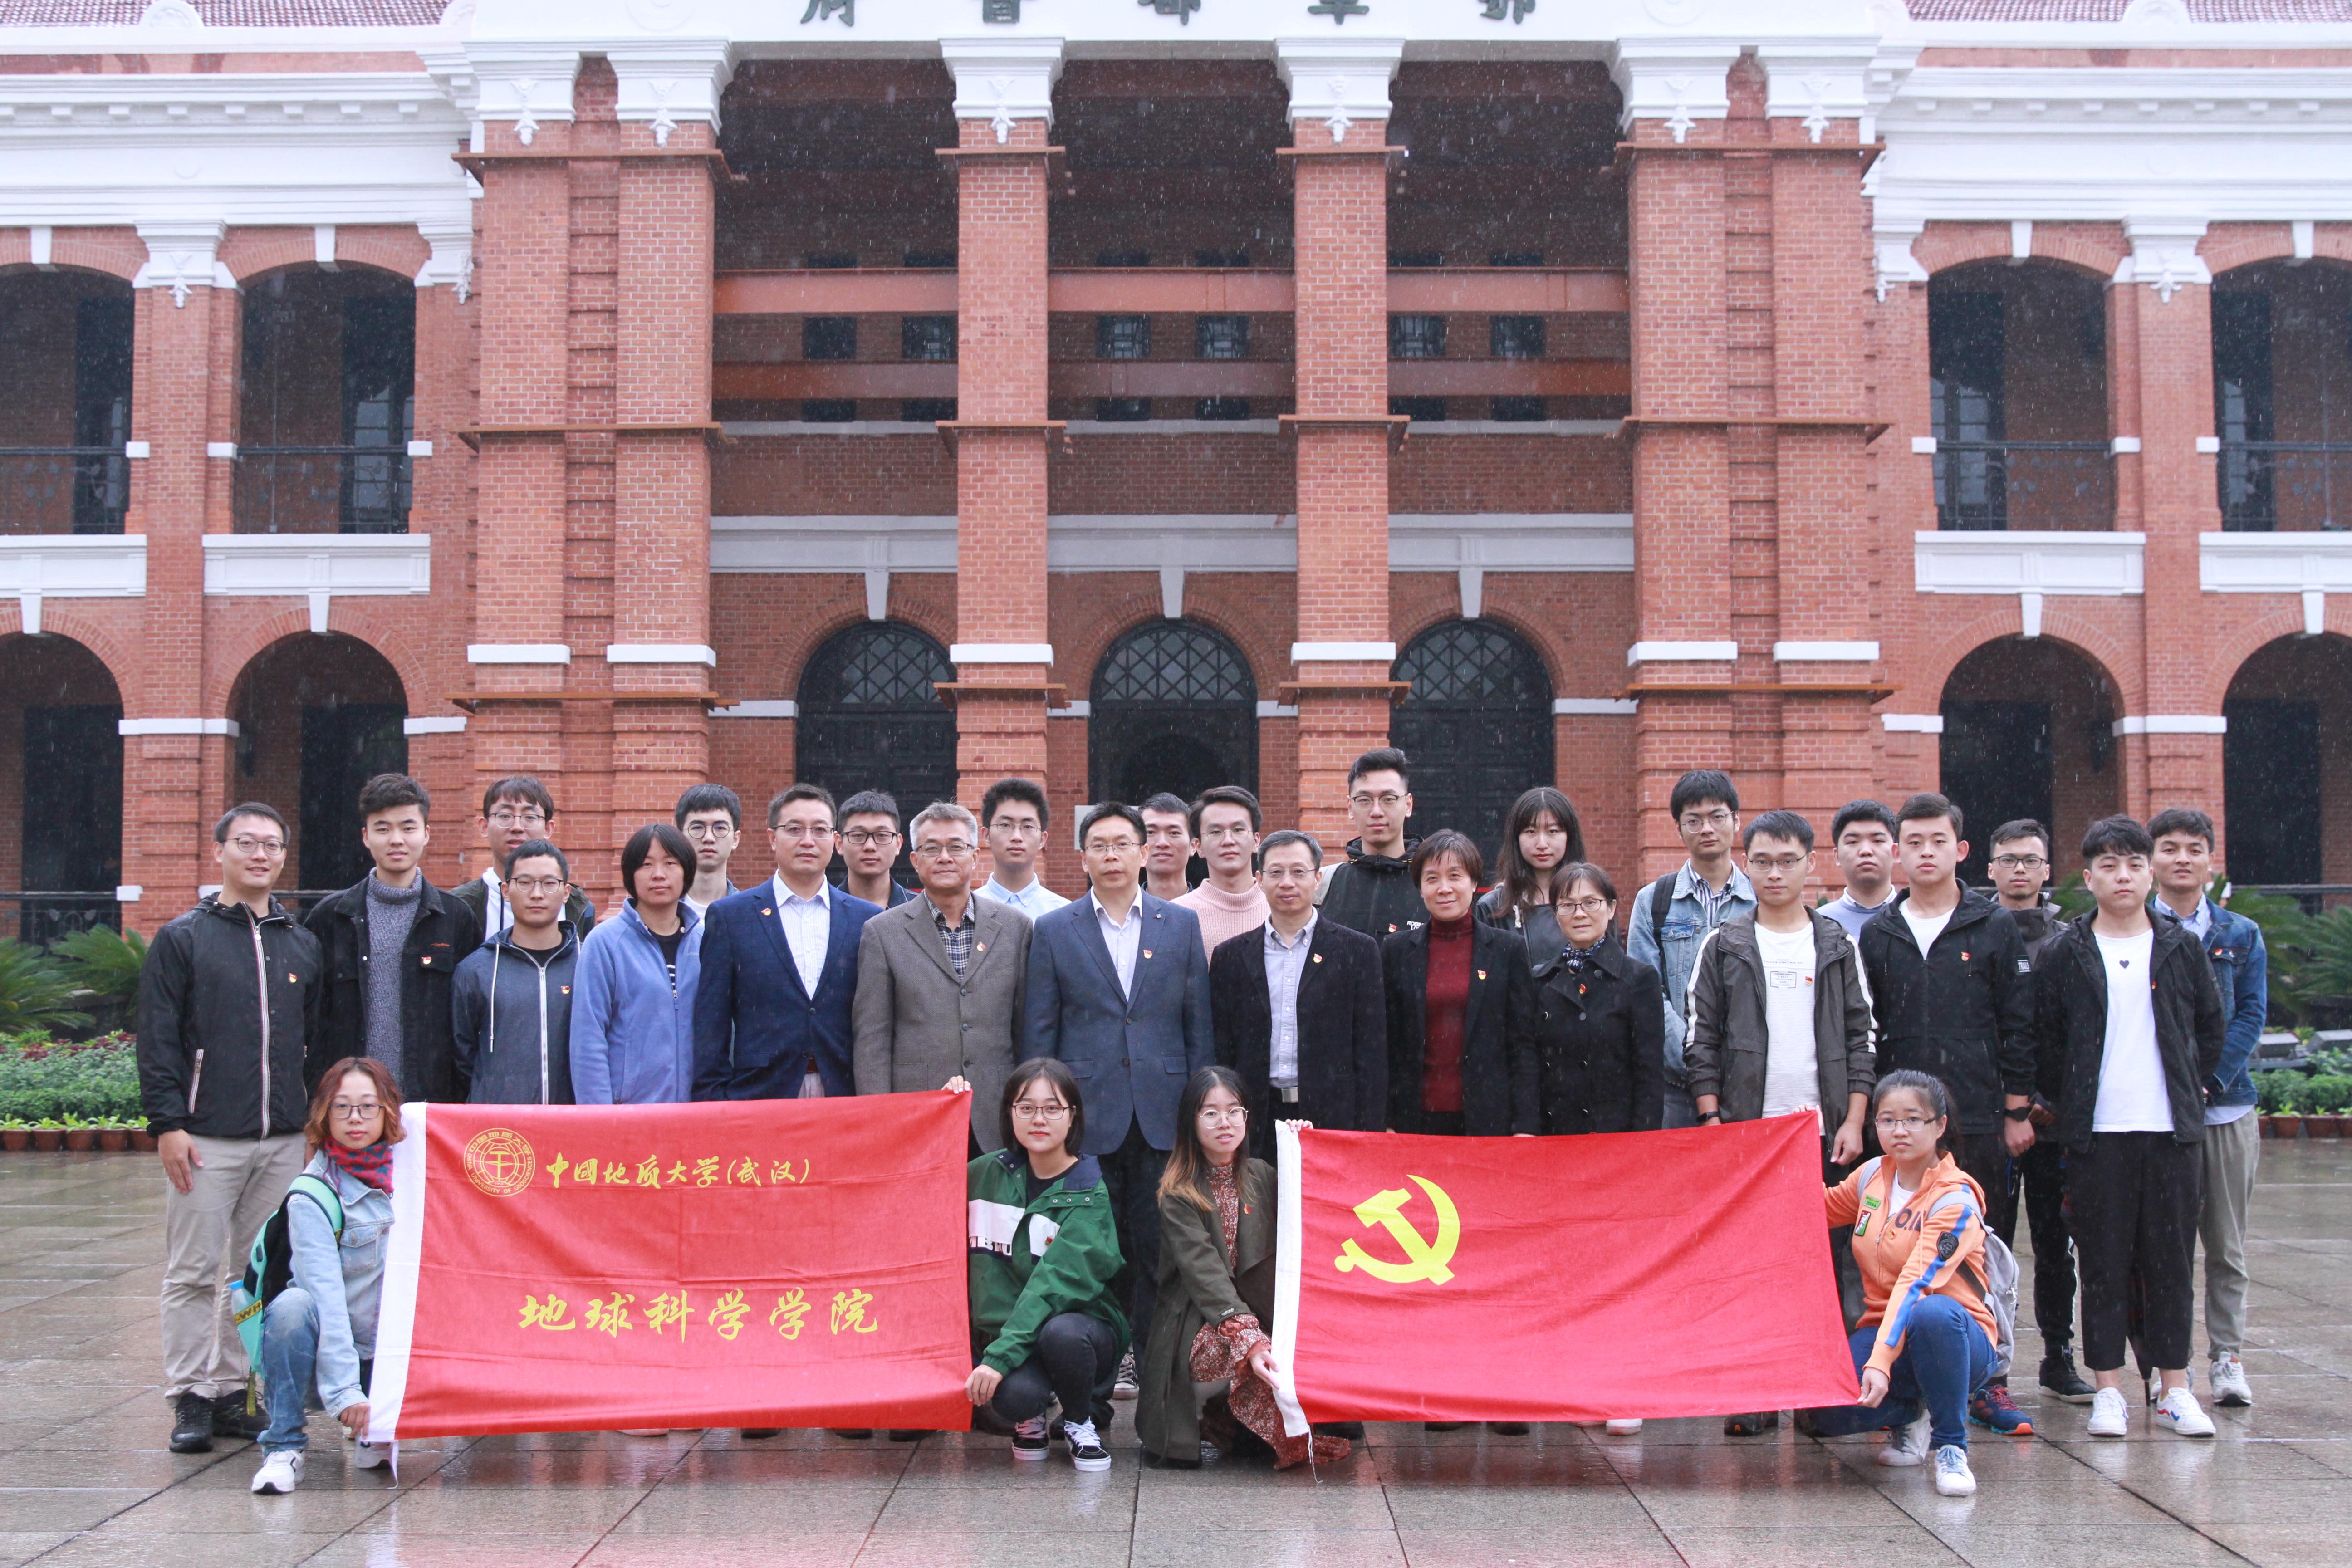 支部党员跟随学院领导、老师参加辛亥革命纪念馆，开展“不忘初心，牢记使命”实践学习（二）